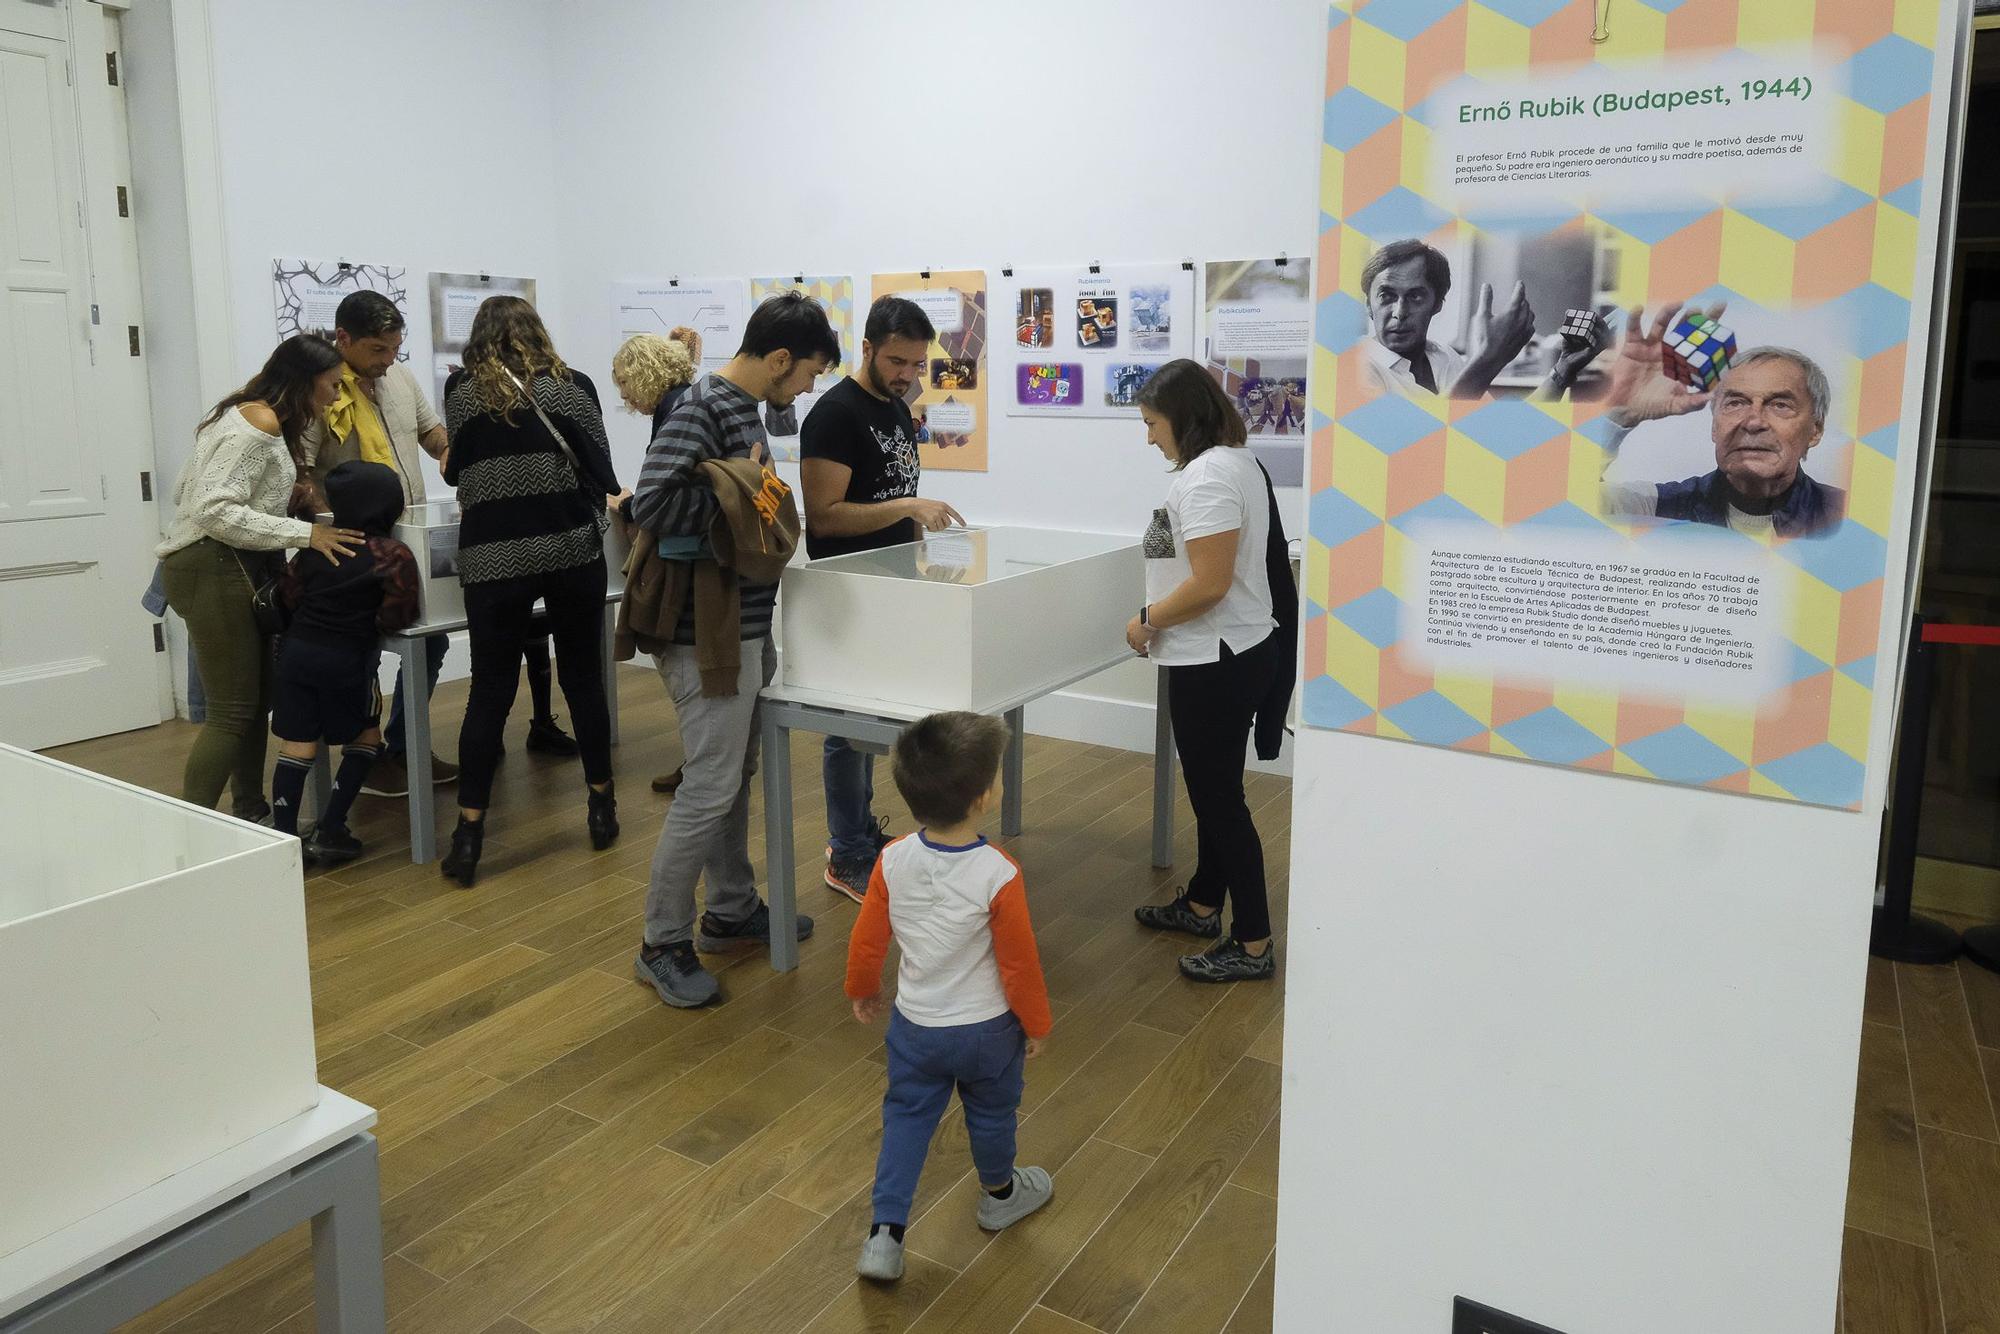 Inauguración de la exposición en homenaje al 50º cumpleaños del cubo de Rubik